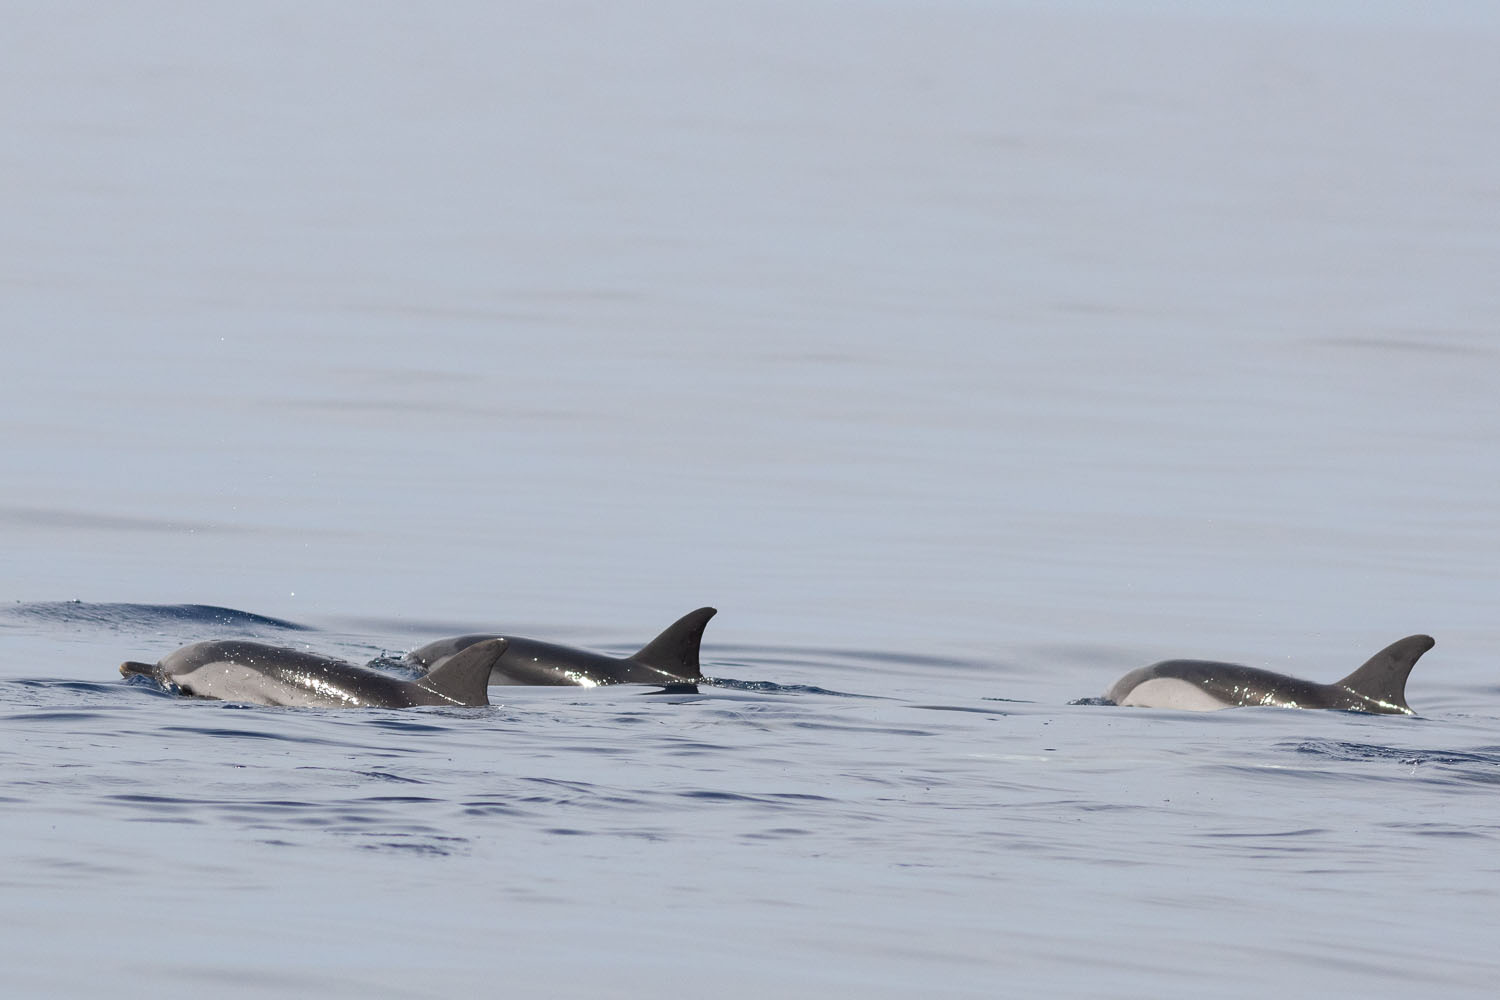 voyage scientifique - cetaces de mediterranee vers la corse a la voile 24